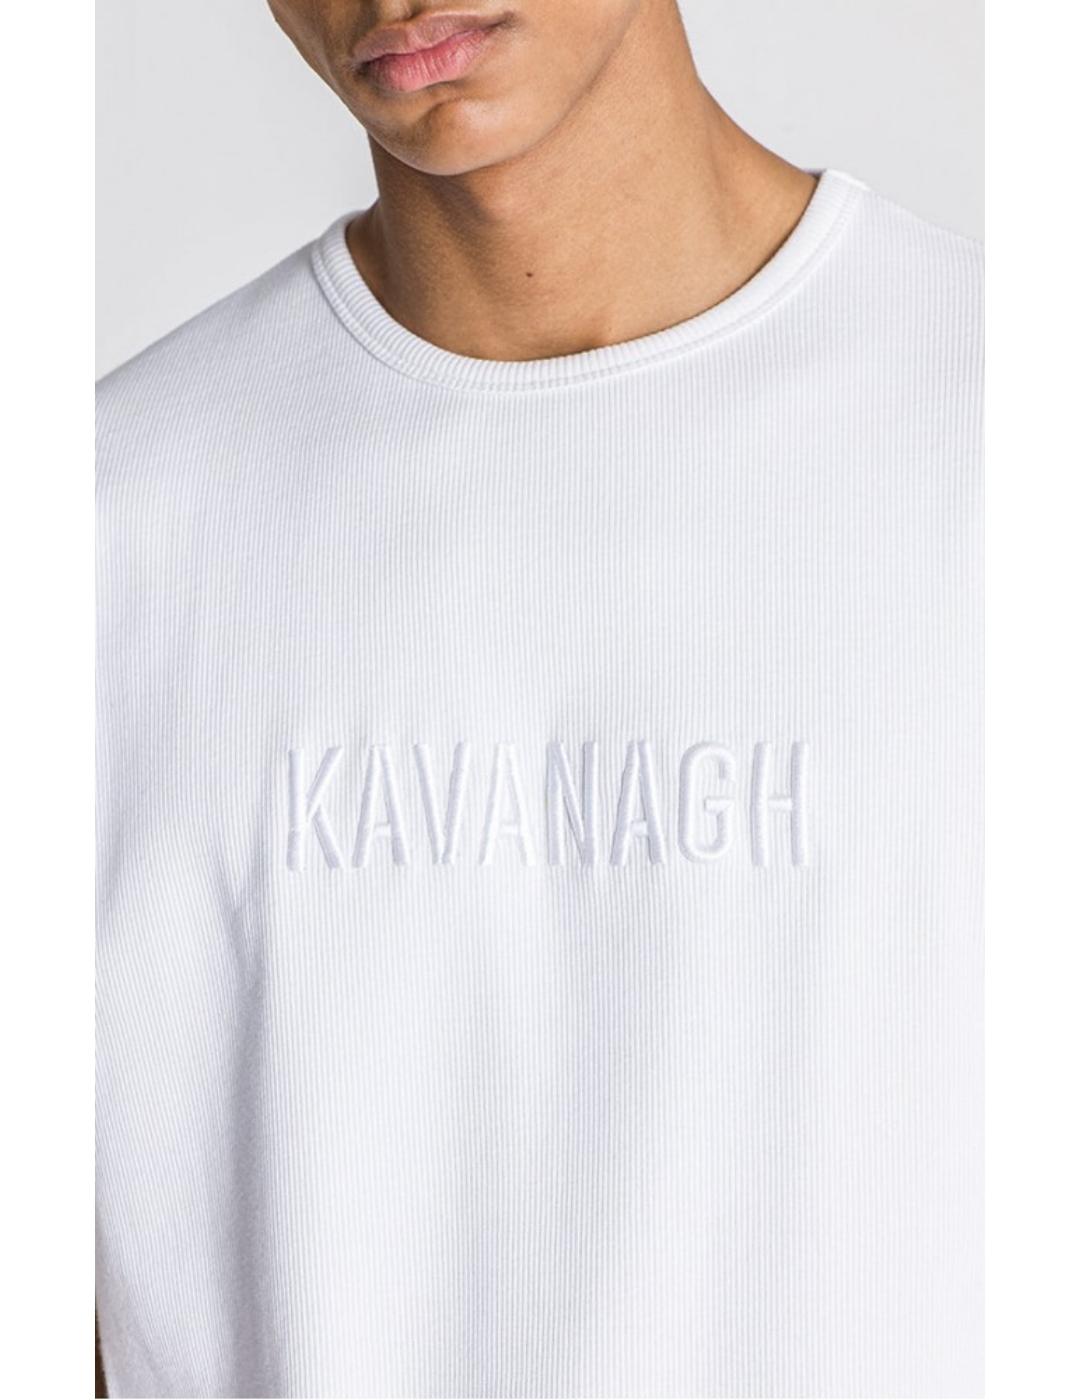 Camiseta Gianni Kavanagh Vedrá blanca para hombre